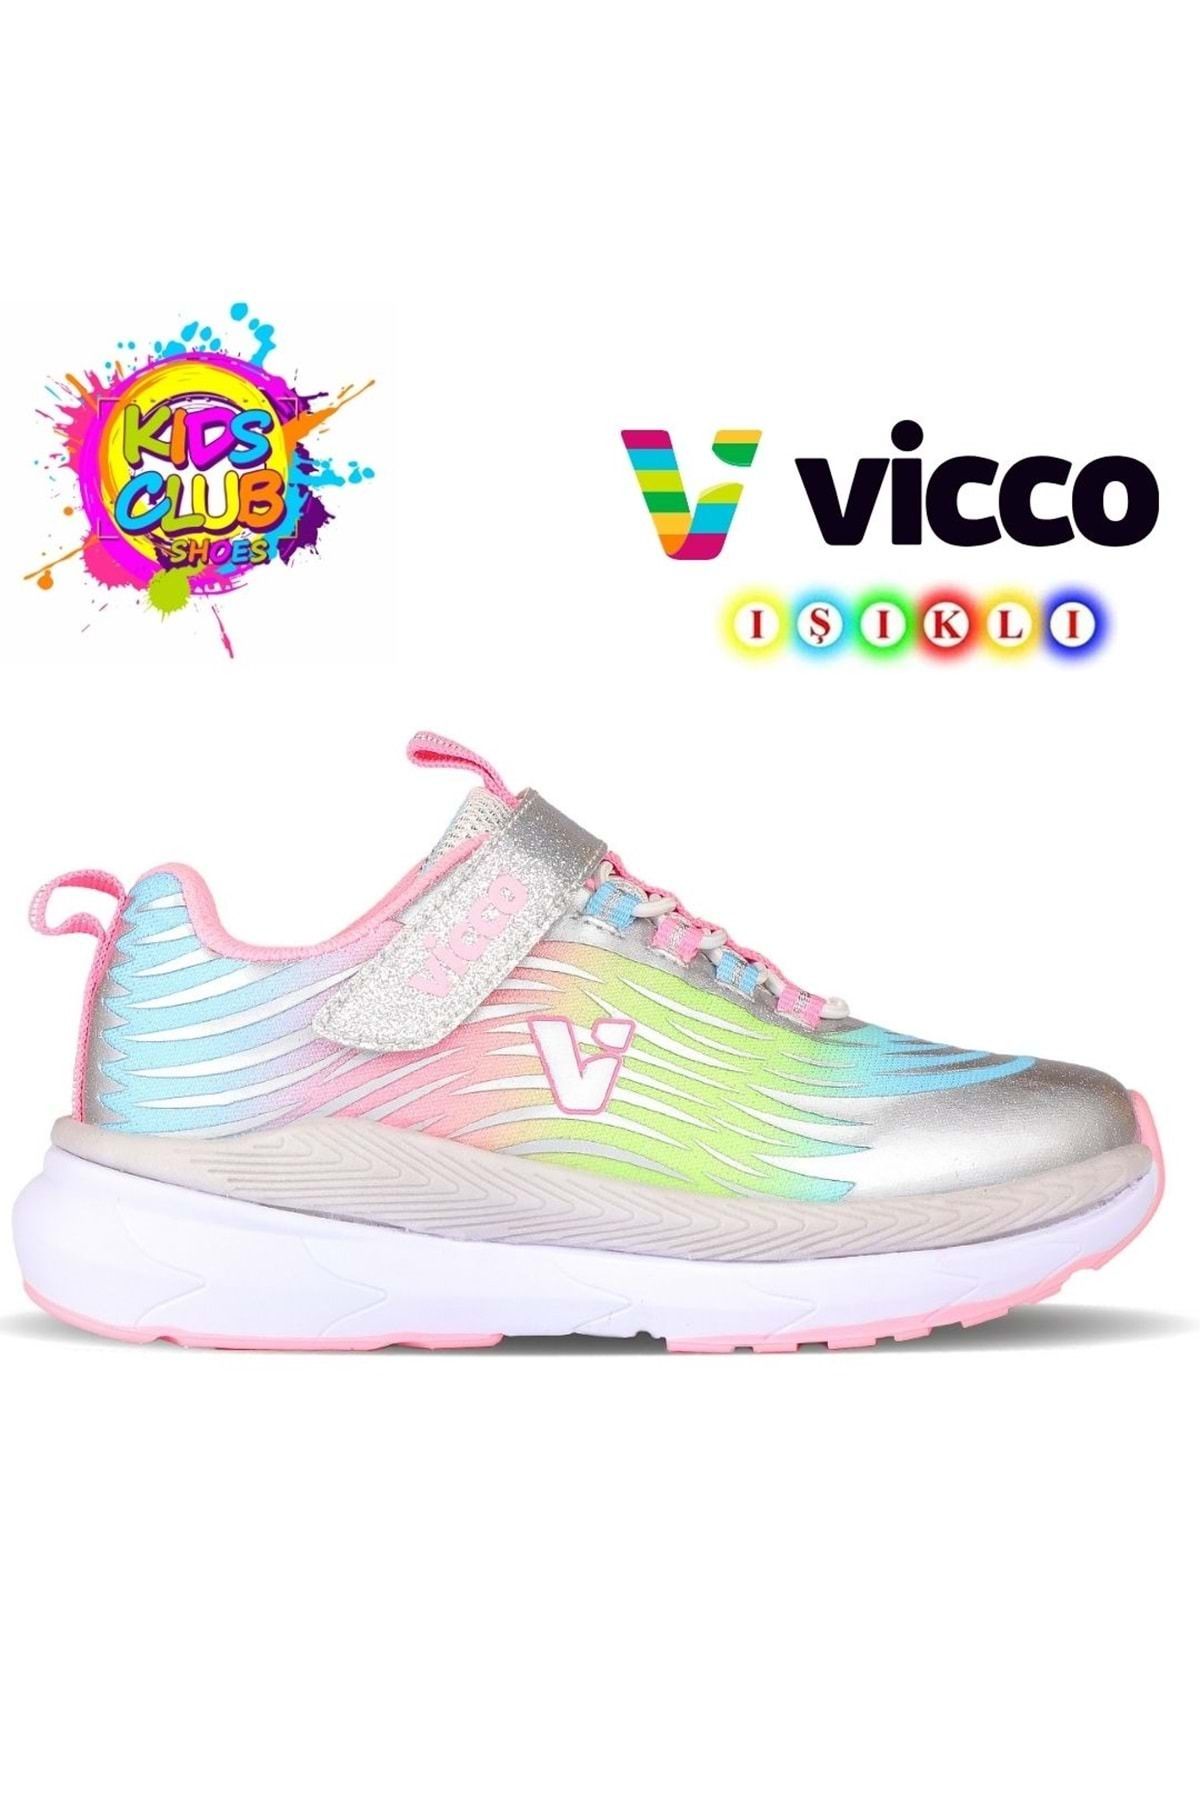 Vicco Maggie Işıklı Ortopedik Çocuk Spor Ayakkabı Gümüş